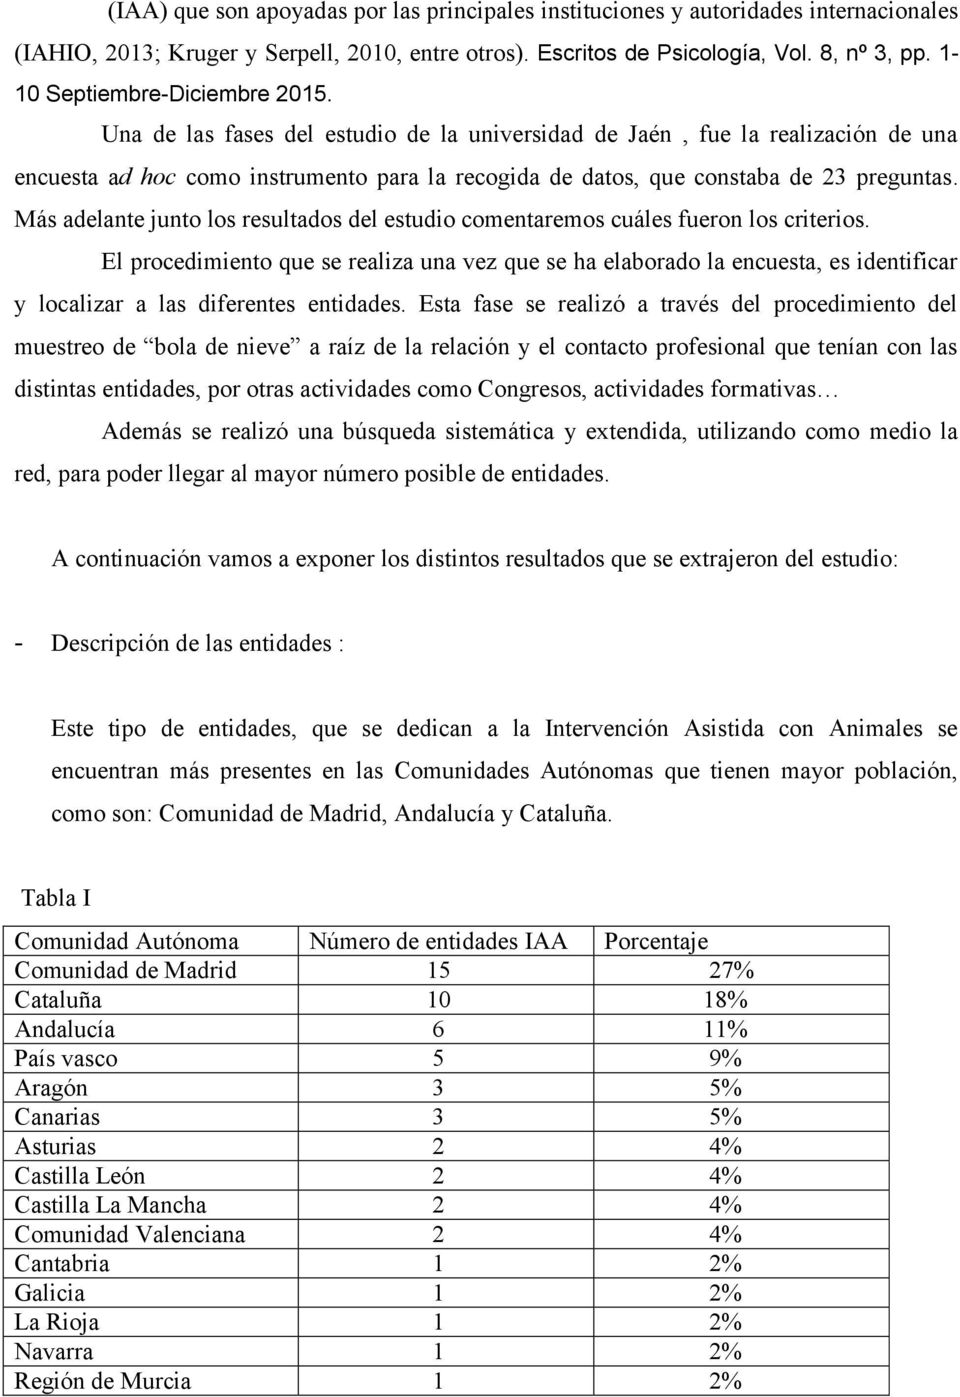 Una de las fases del estudio de la universidad de Jaén, fue la realización de una encuesta ad hoc como instrumento para la recogida de datos, que constaba de 23 preguntas.